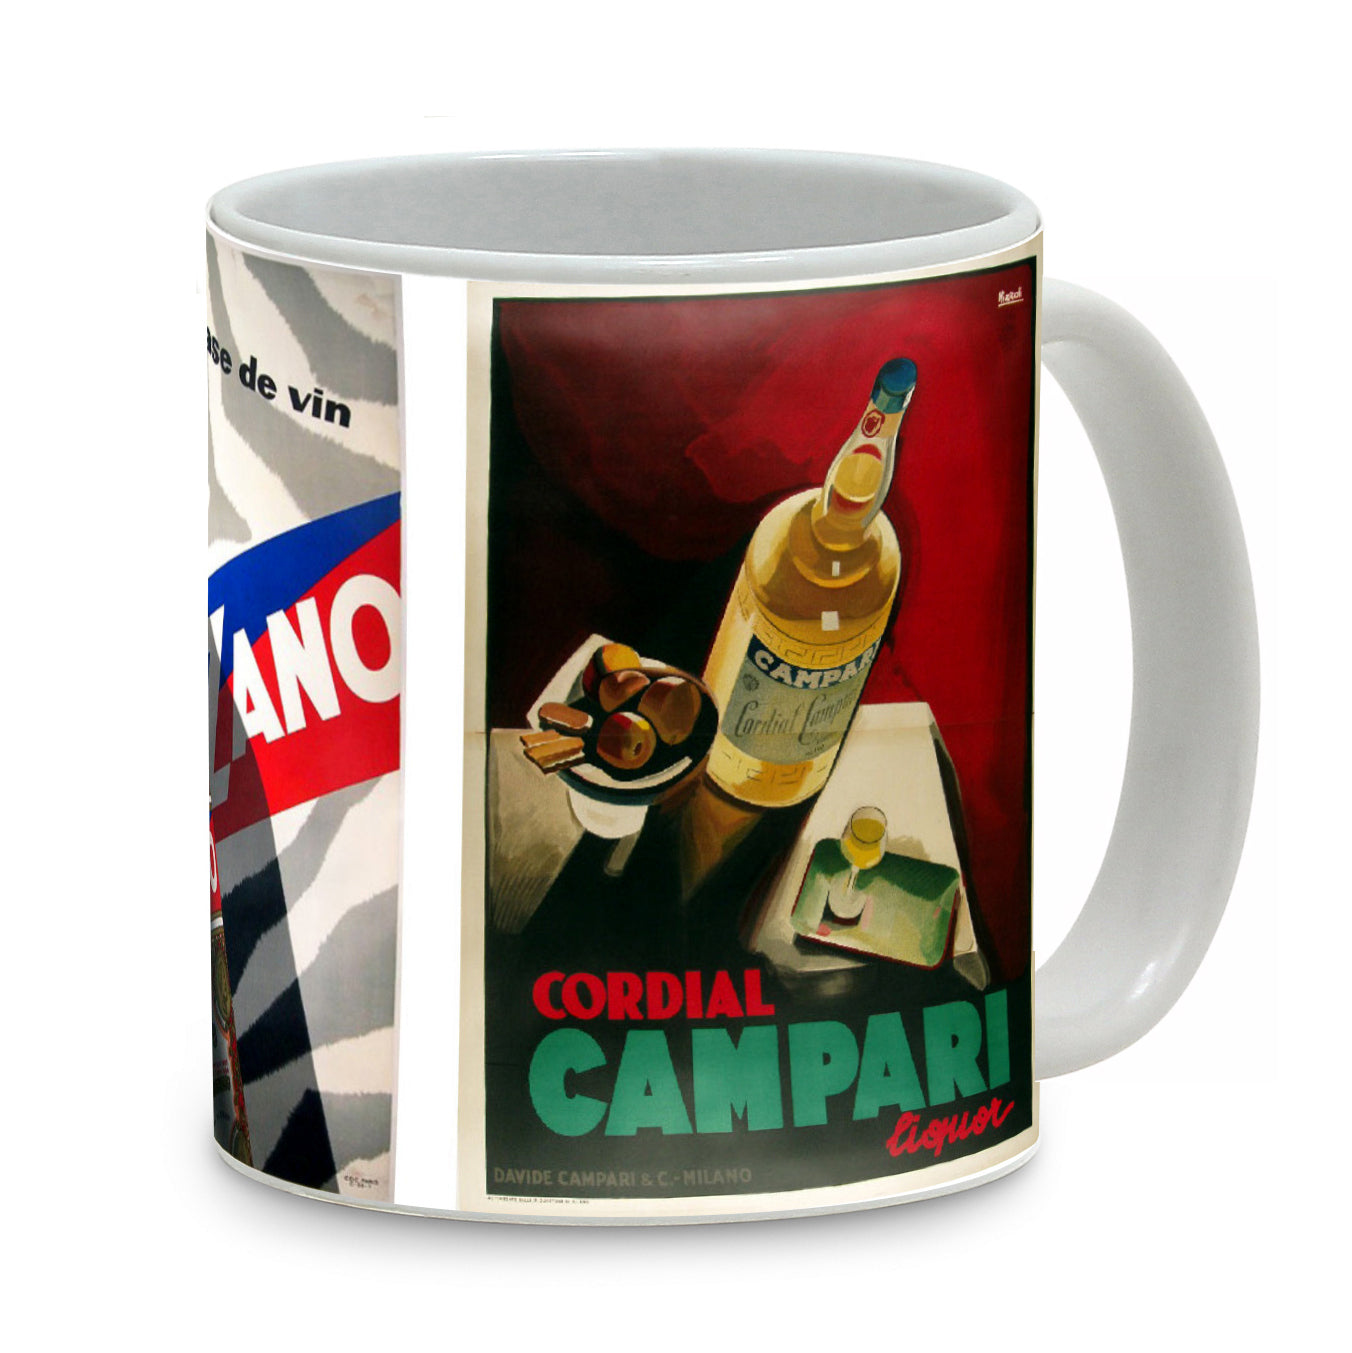 SUBLIMART: Bella Italia - Mug featuring Italian vintage posters (Aperol, Cinzano, Campari)